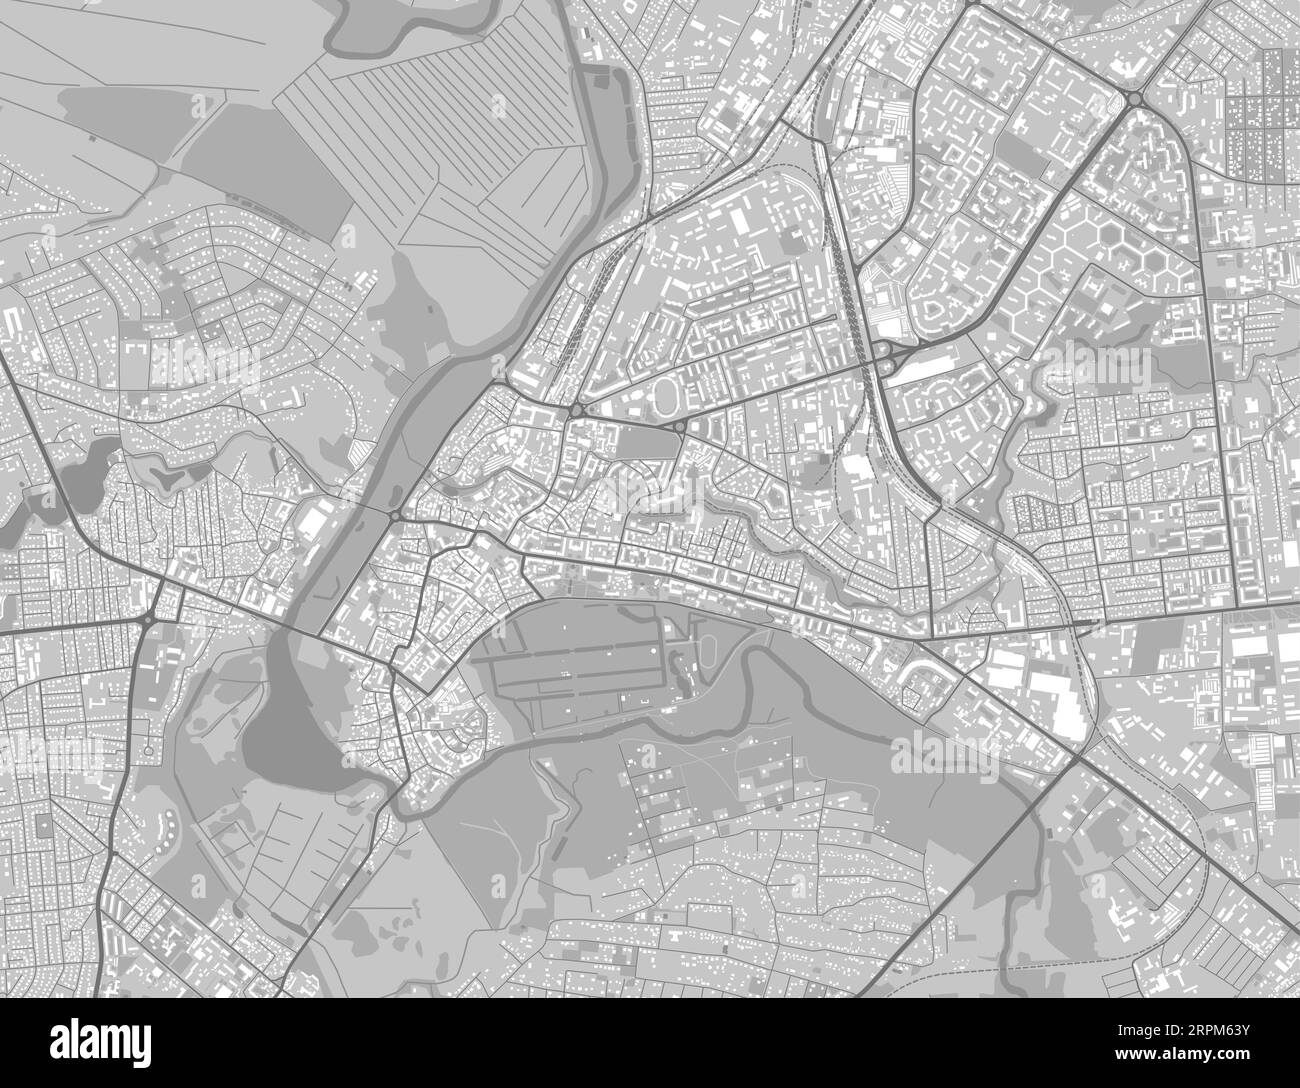 Detaillierte Karte der Stadt Lutsk, Oblast Zentrum der Ukraine. Stadtplan mit Flüssen und Straßen, Parks und Eisenbahnen. Vektorillustration Stock Vektor